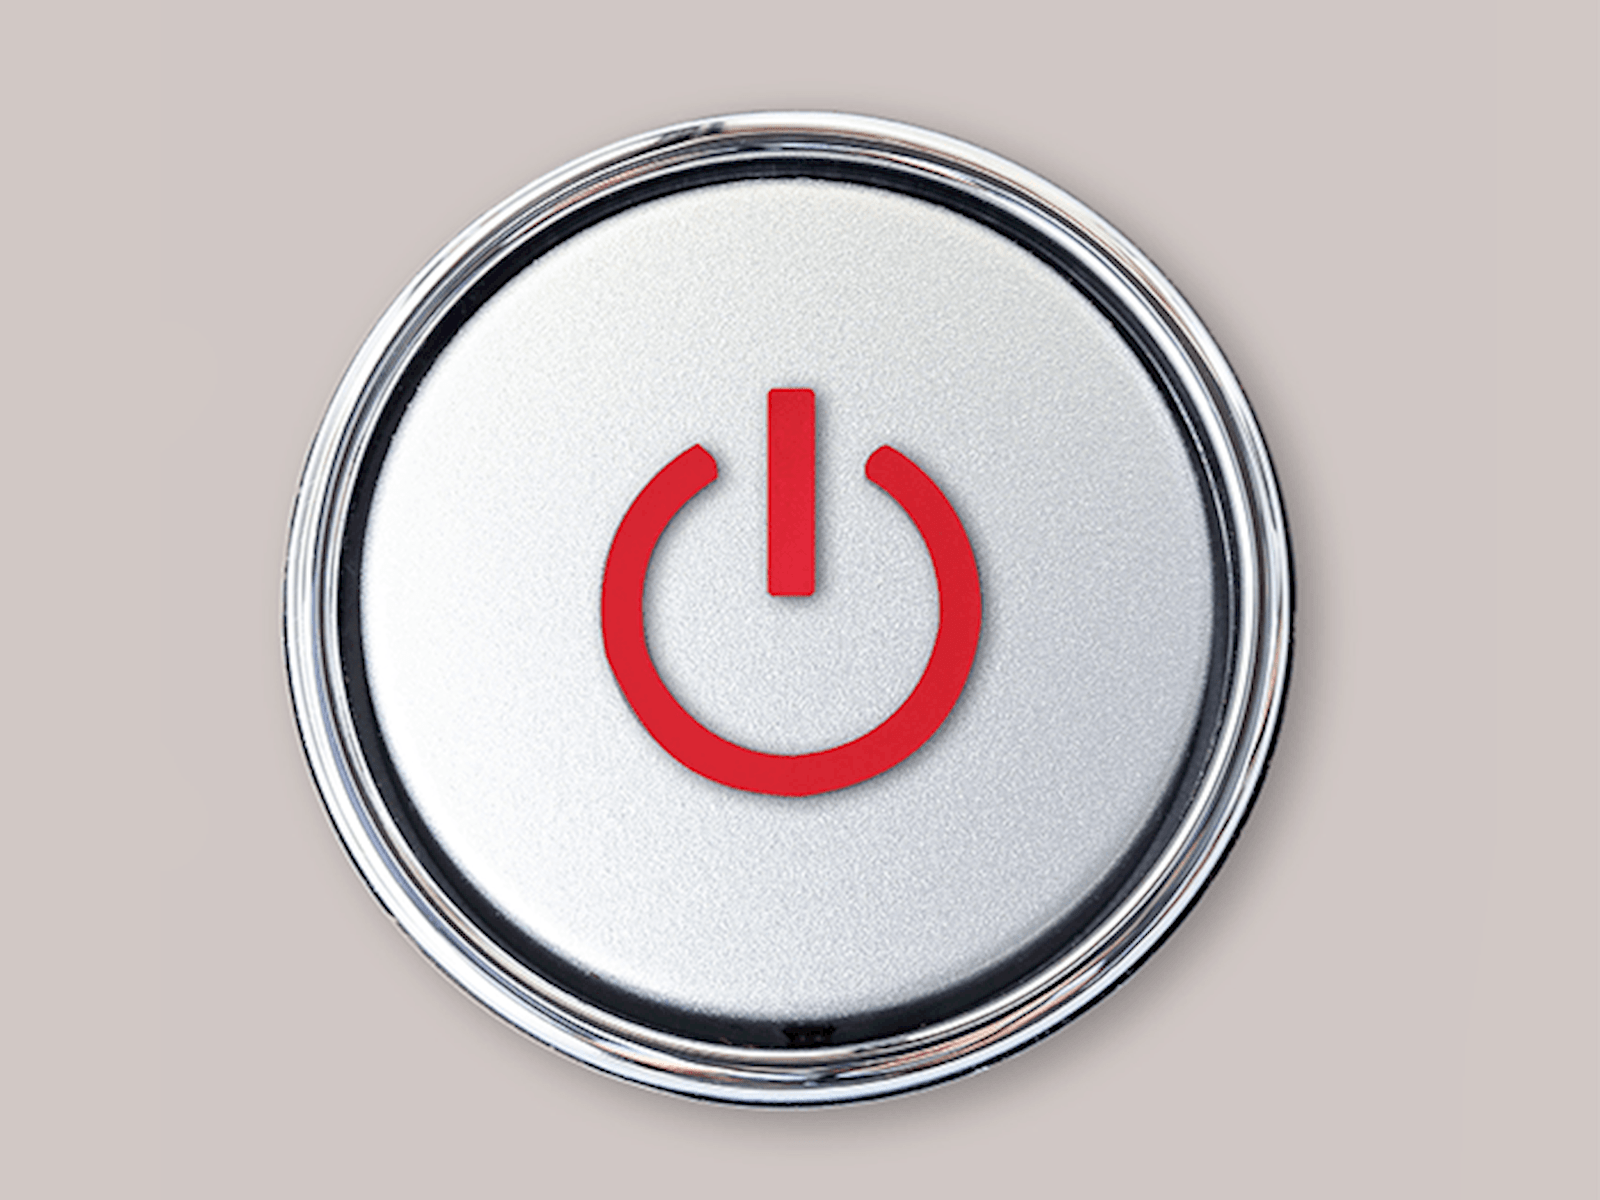 A power button